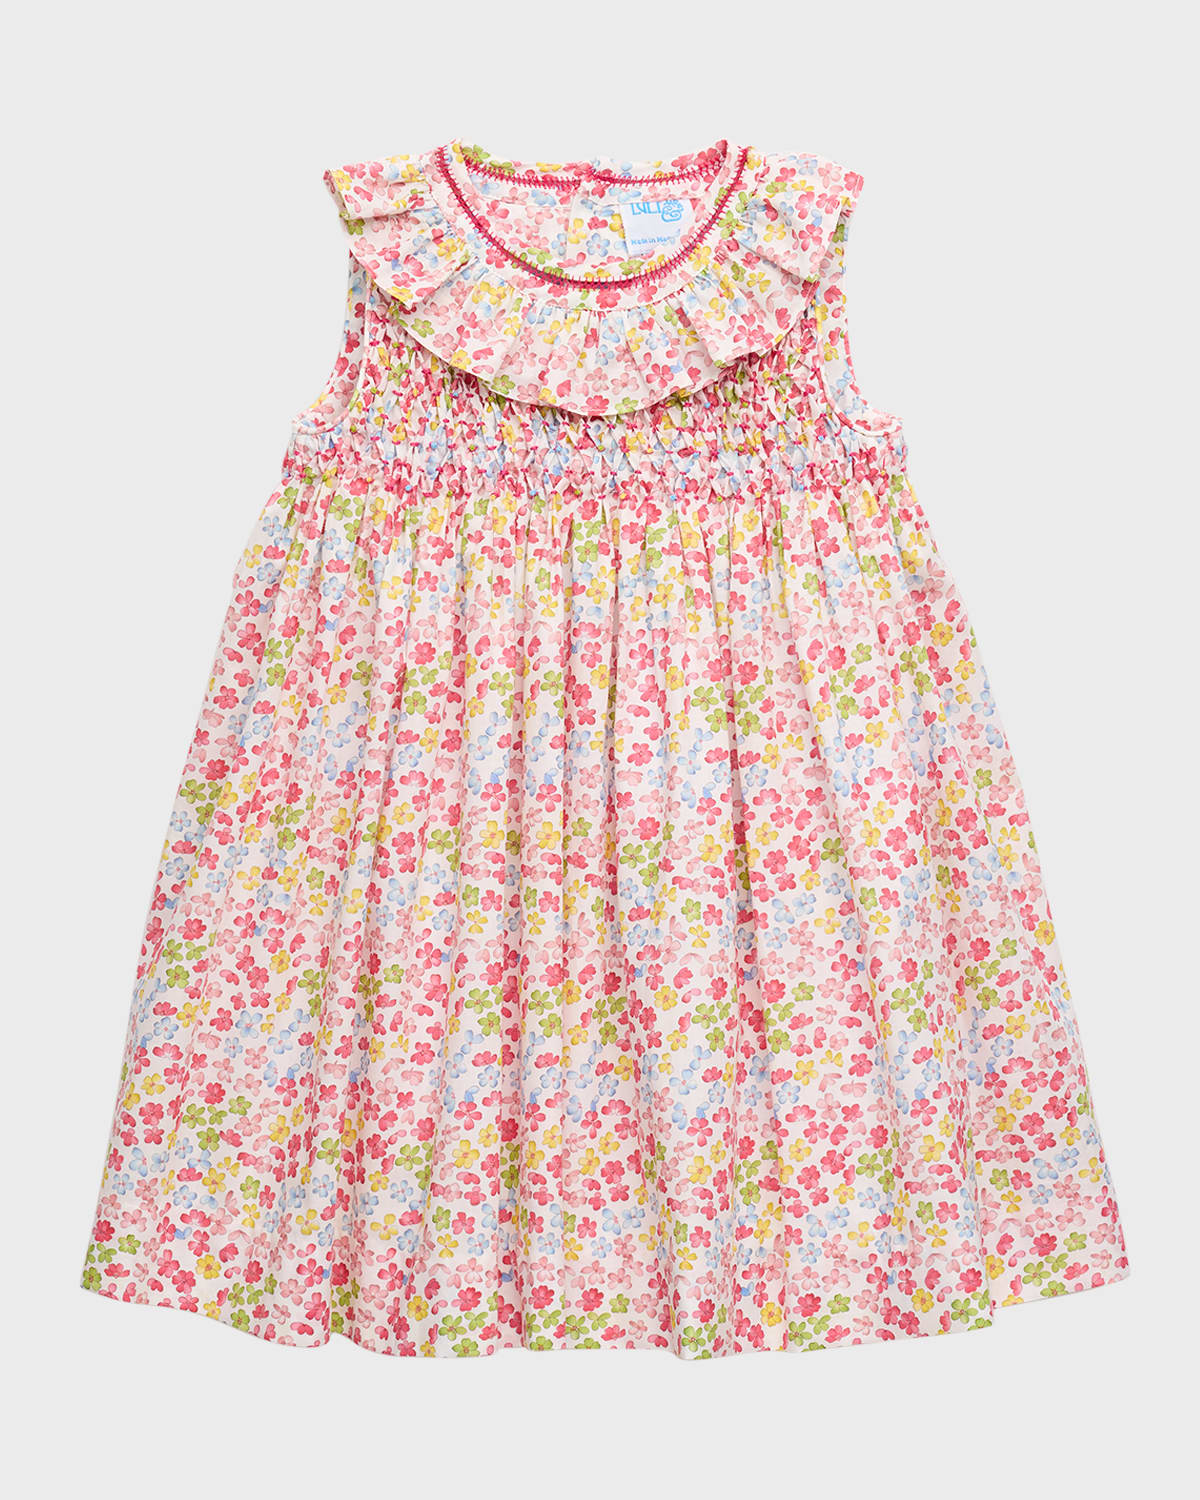 Luli & Me Kids' Girl's Garden Party Smocked Sleeveless Cotton Dress In Fucshia